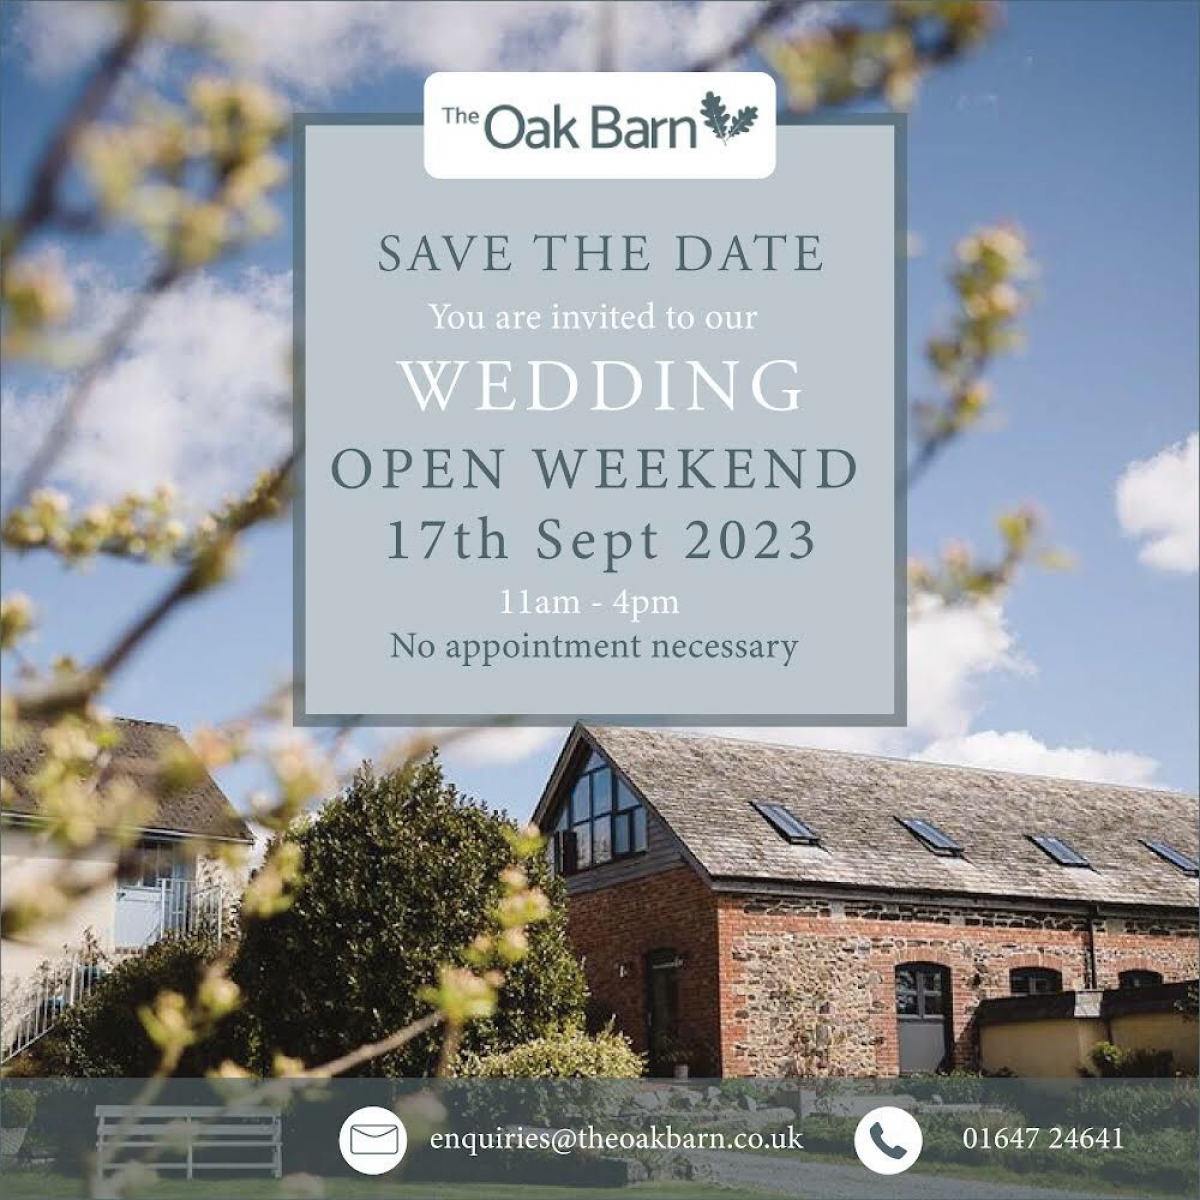 Wedding open weekend at the Oak Barn